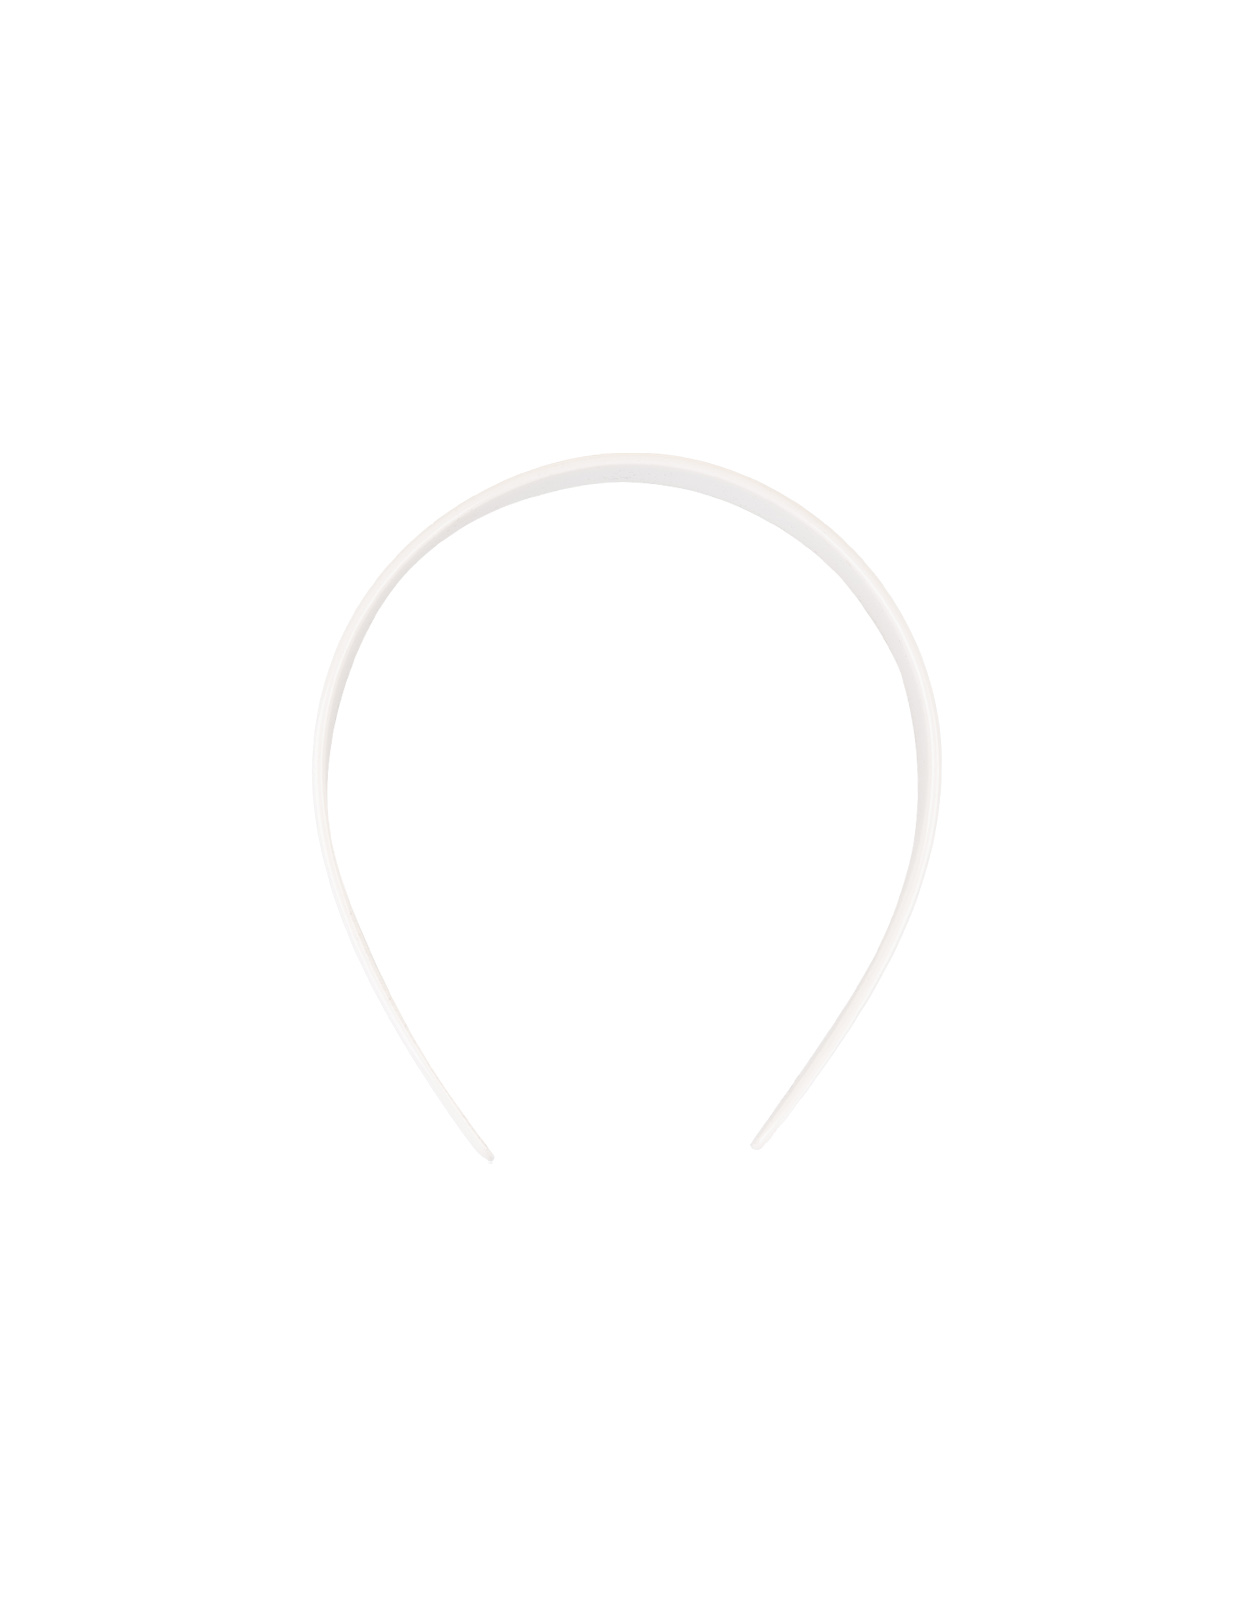 Cerchietto Bianco Con Logo CELINE | 46Y376CLA01OB